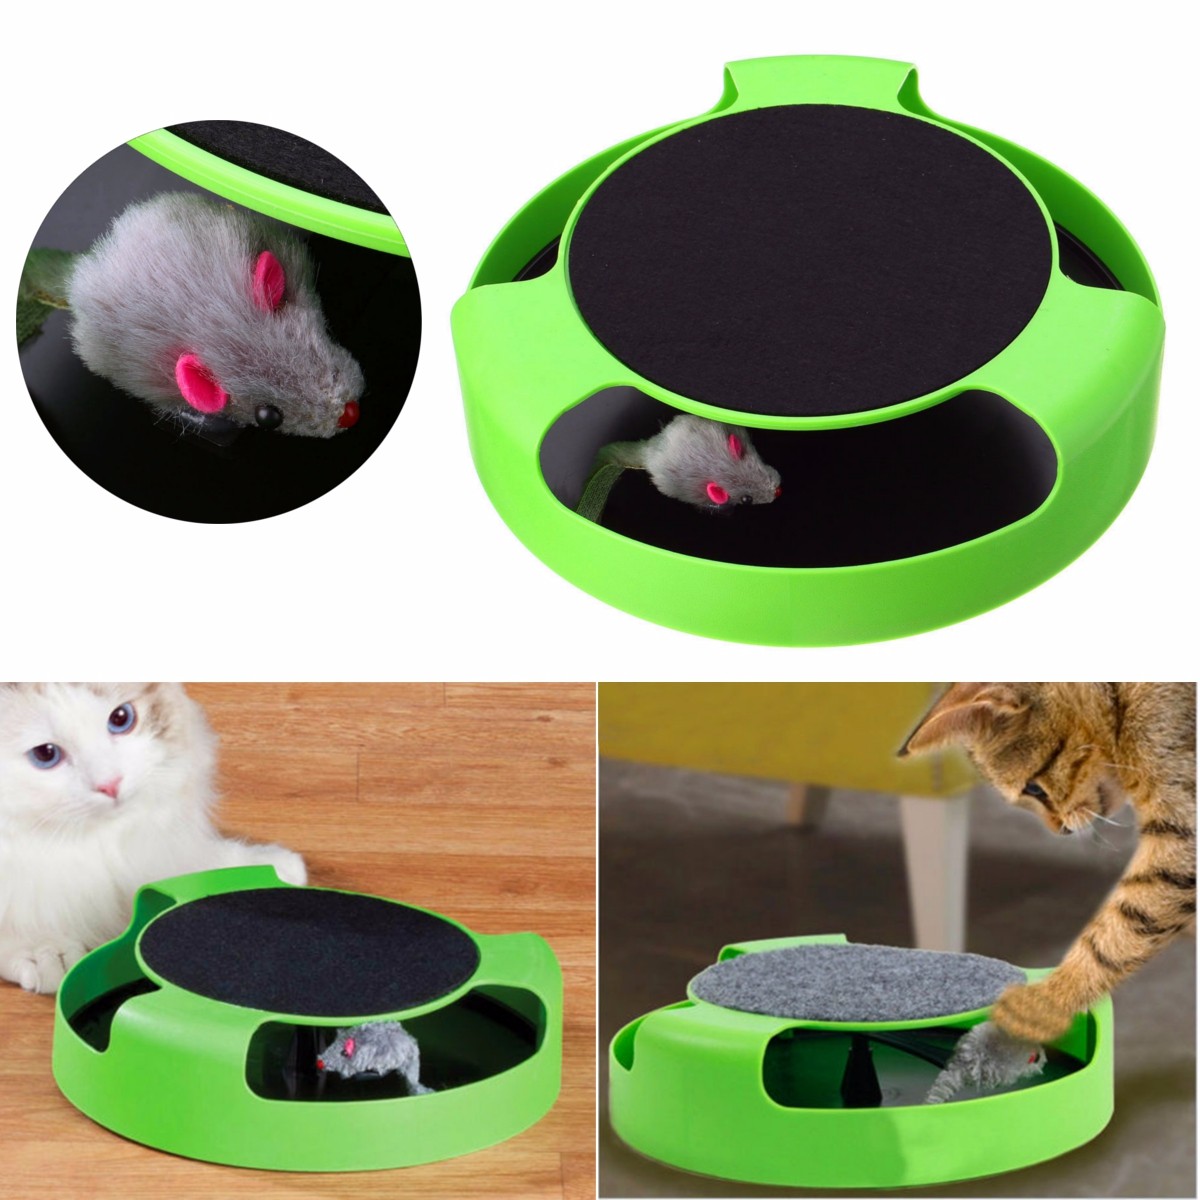 движение котенок кошка игрушка поймать мышь Интерактивные игрушки для кошки смешные faux мыши кота продукта